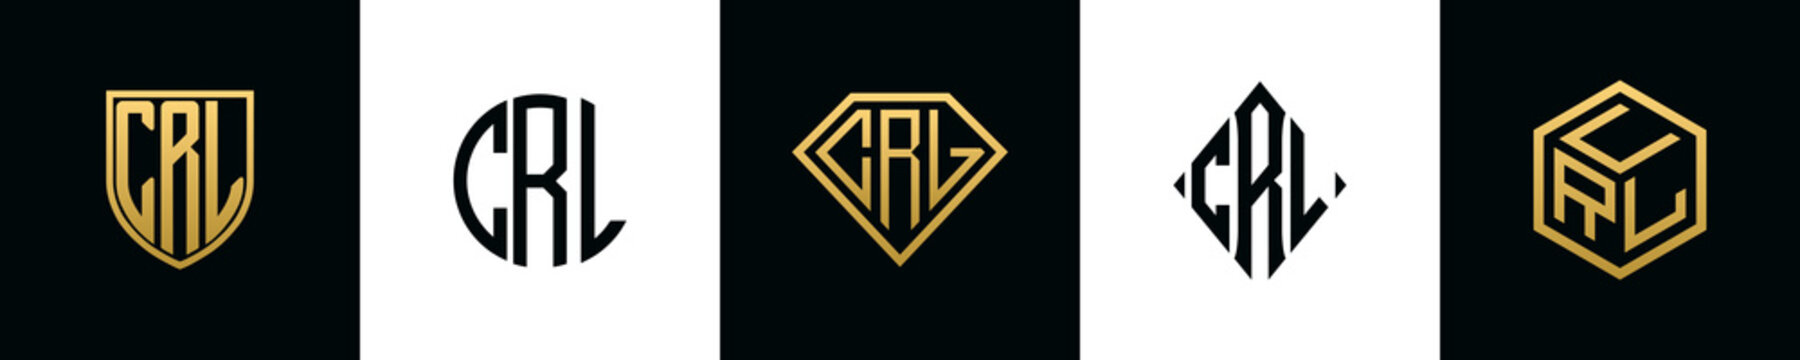 Initial letters CRL logo designs Bundle